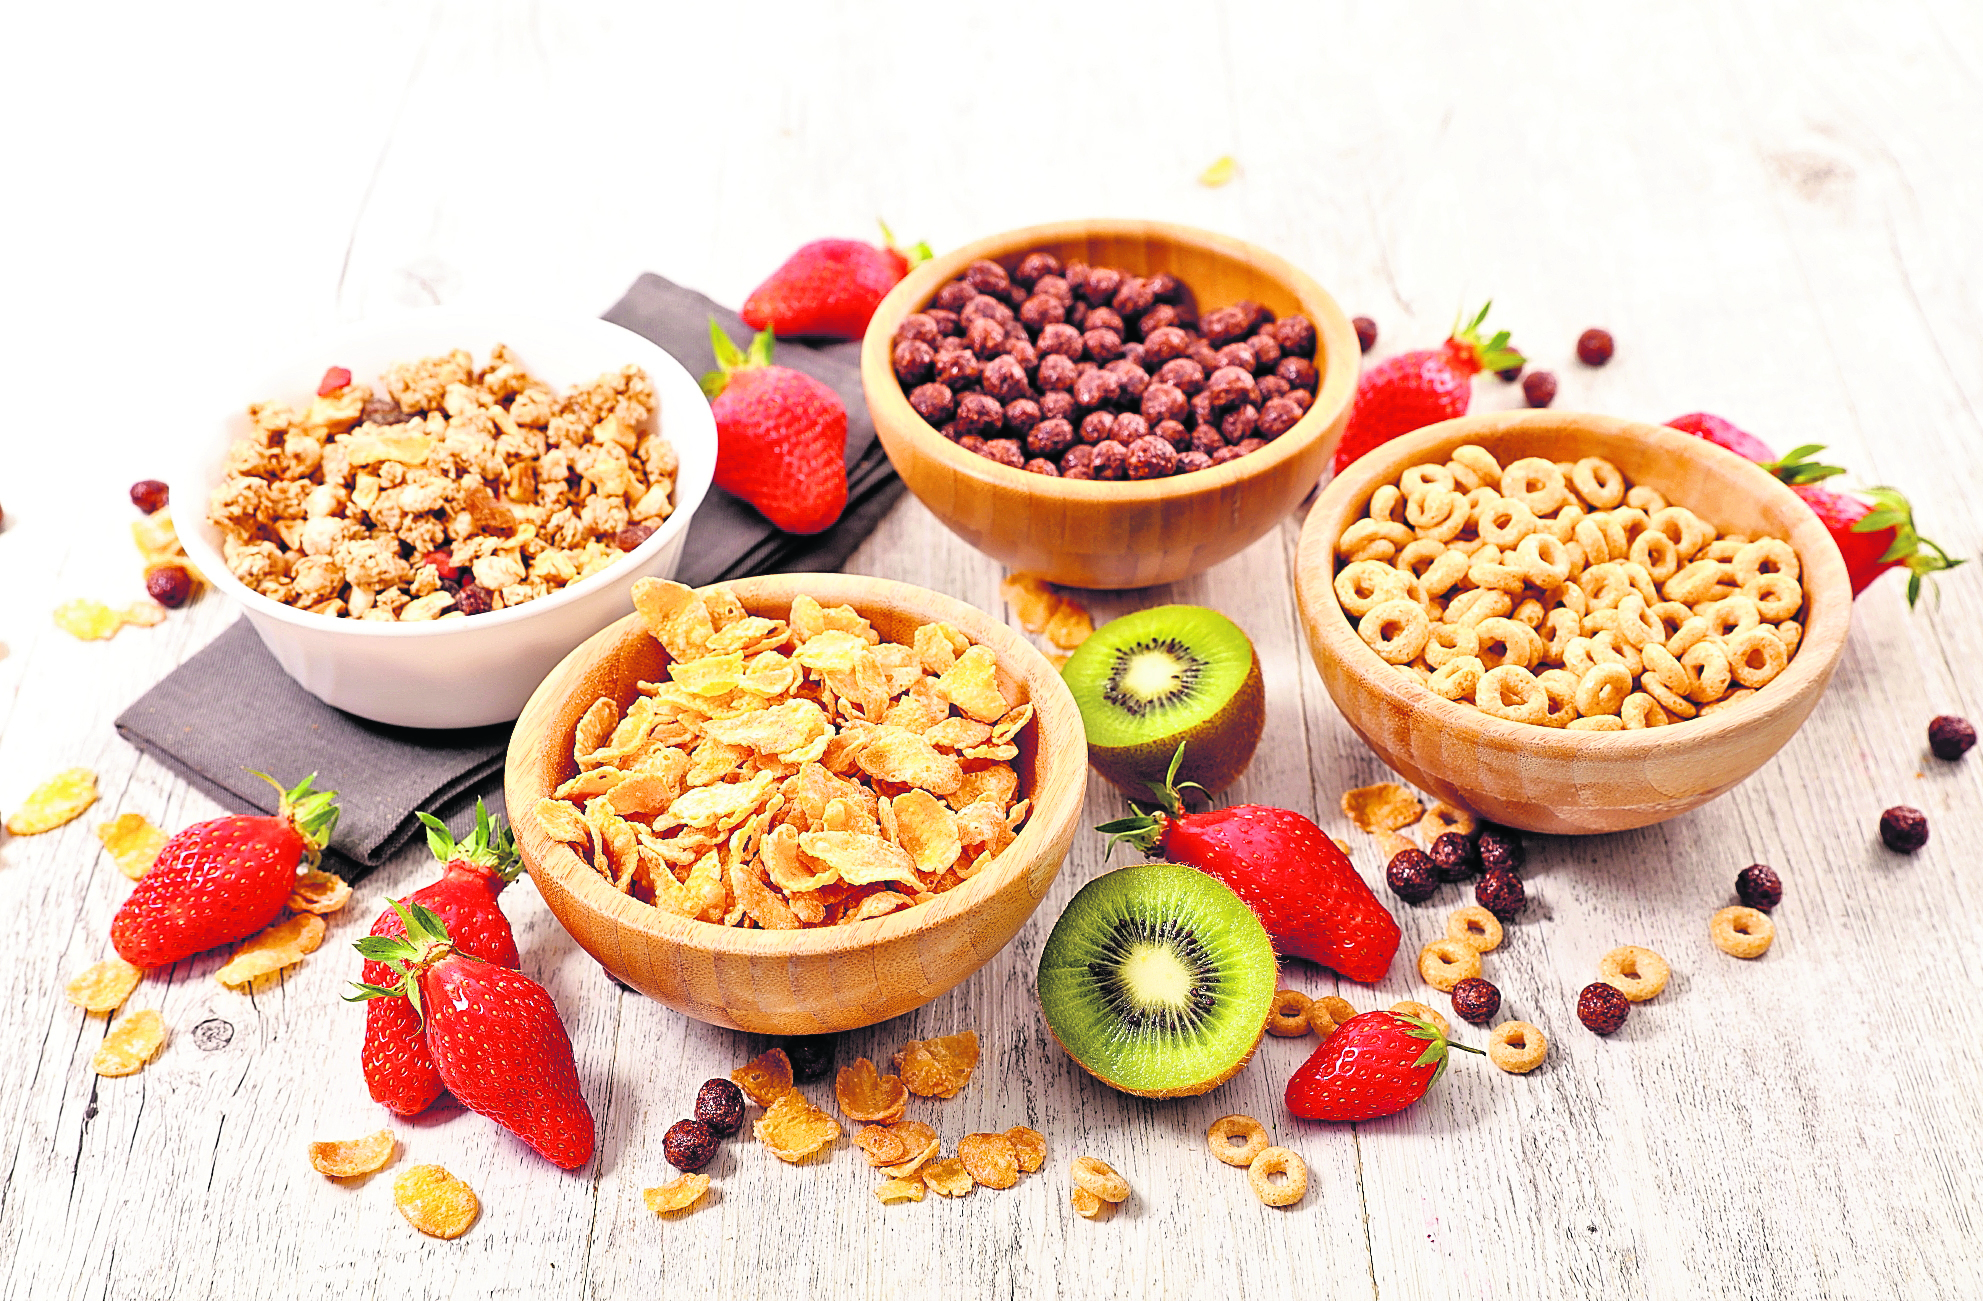 Al elegir un cereal es importante ver la etiqueta nutricional y analizar la cantidad de azúcar y porcentaje de harina. (Foto Prensa Libre: Shutterstock).
